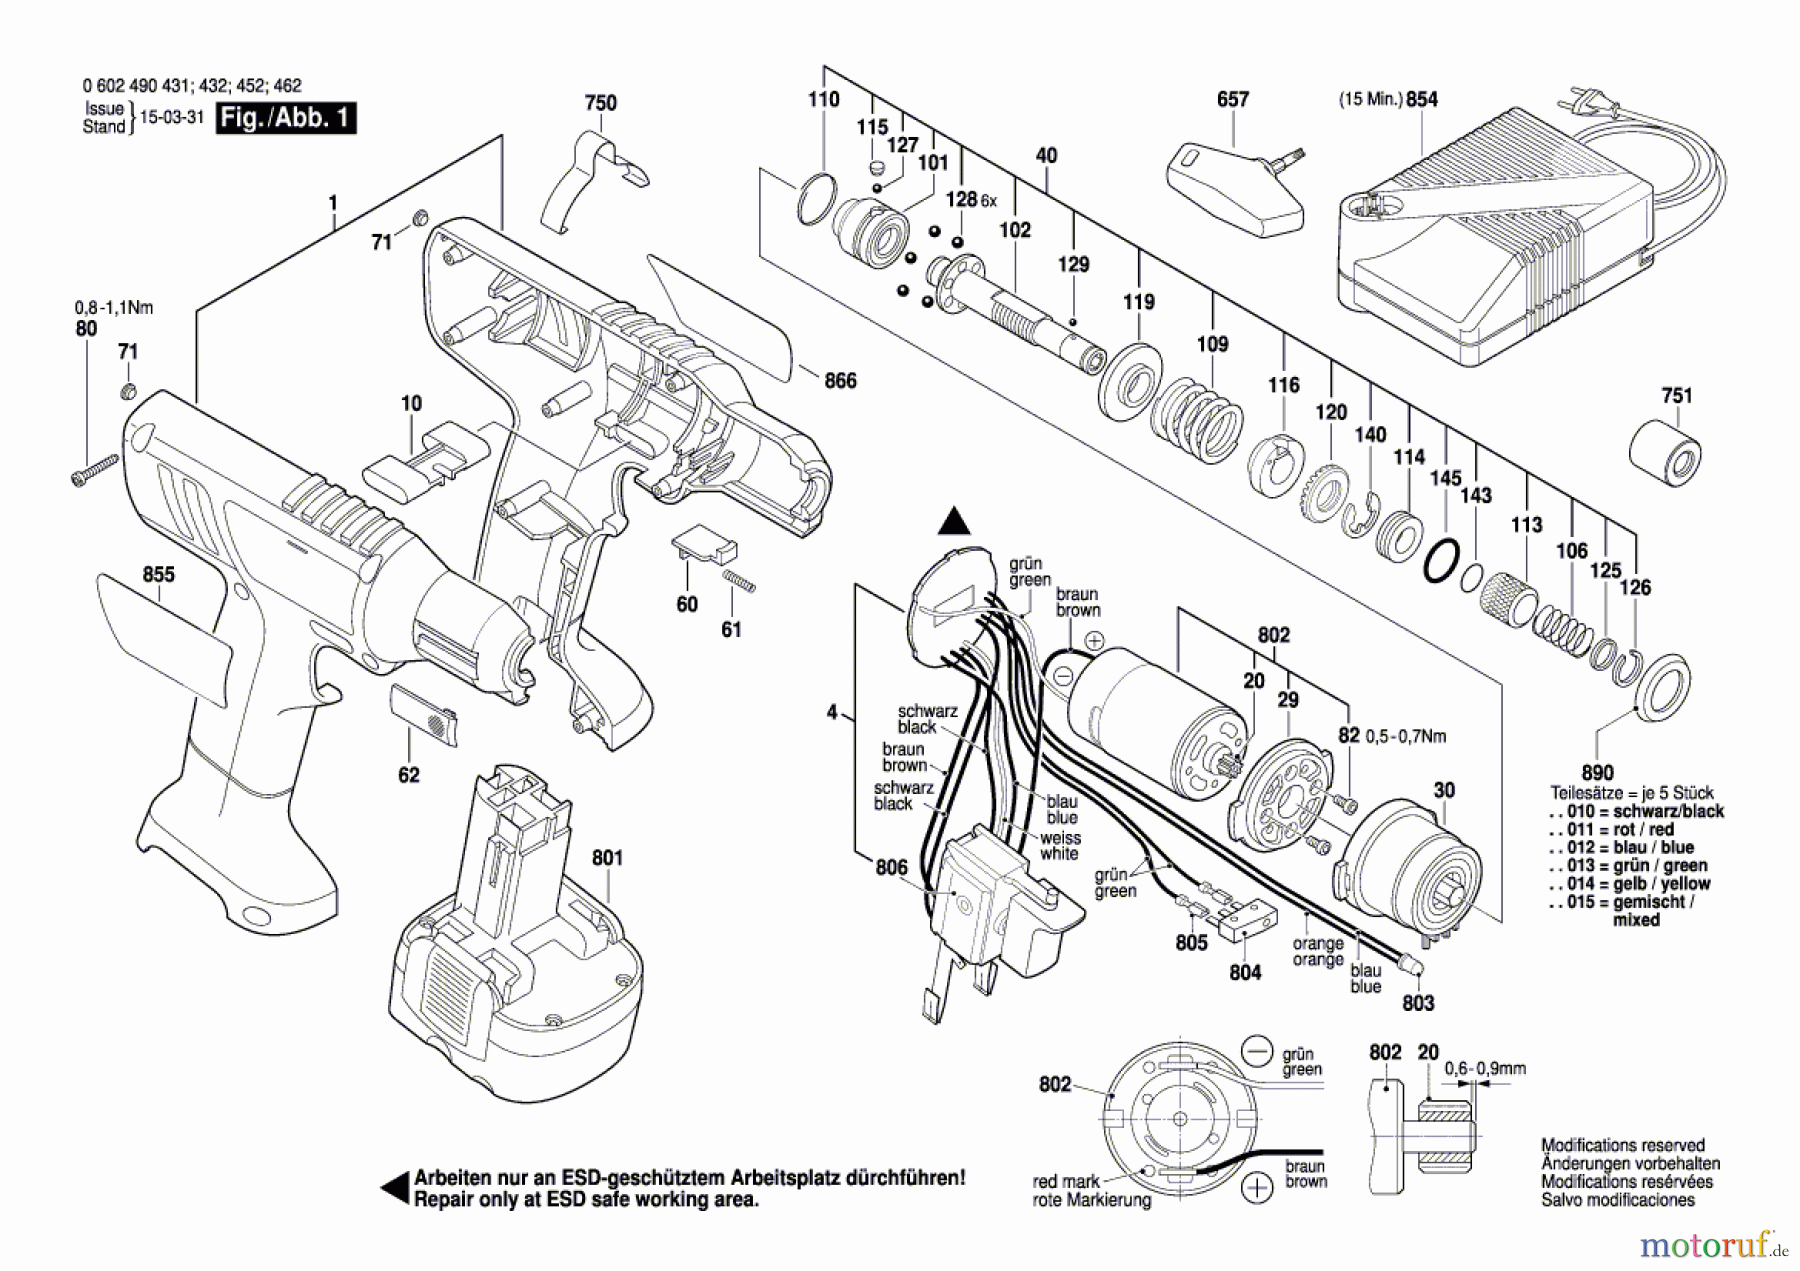  Bosch Akku Werkzeug Akku-Schrauber EXACT 1100 Seite 1